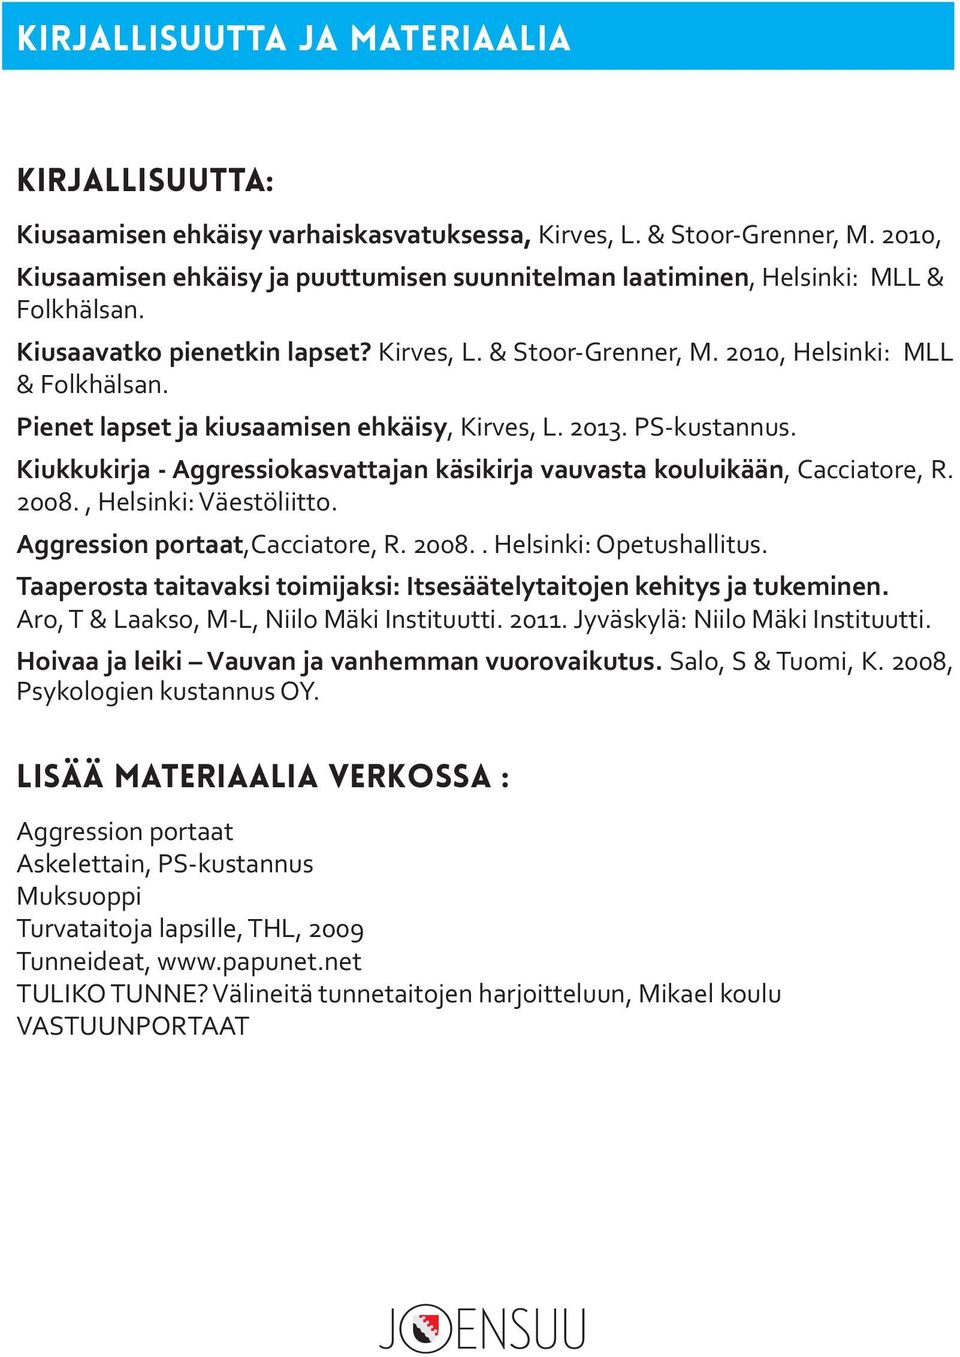 Pienet lapset ja kiusaamisen ehkäisy, Kirves, L. 2013. PS-kustannus. Kiukkukirja - Aggressiokasvattajan käsikirja vauvasta kouluikään, Cacciatore, R. 2008., Helsinki: Väestöliitto.